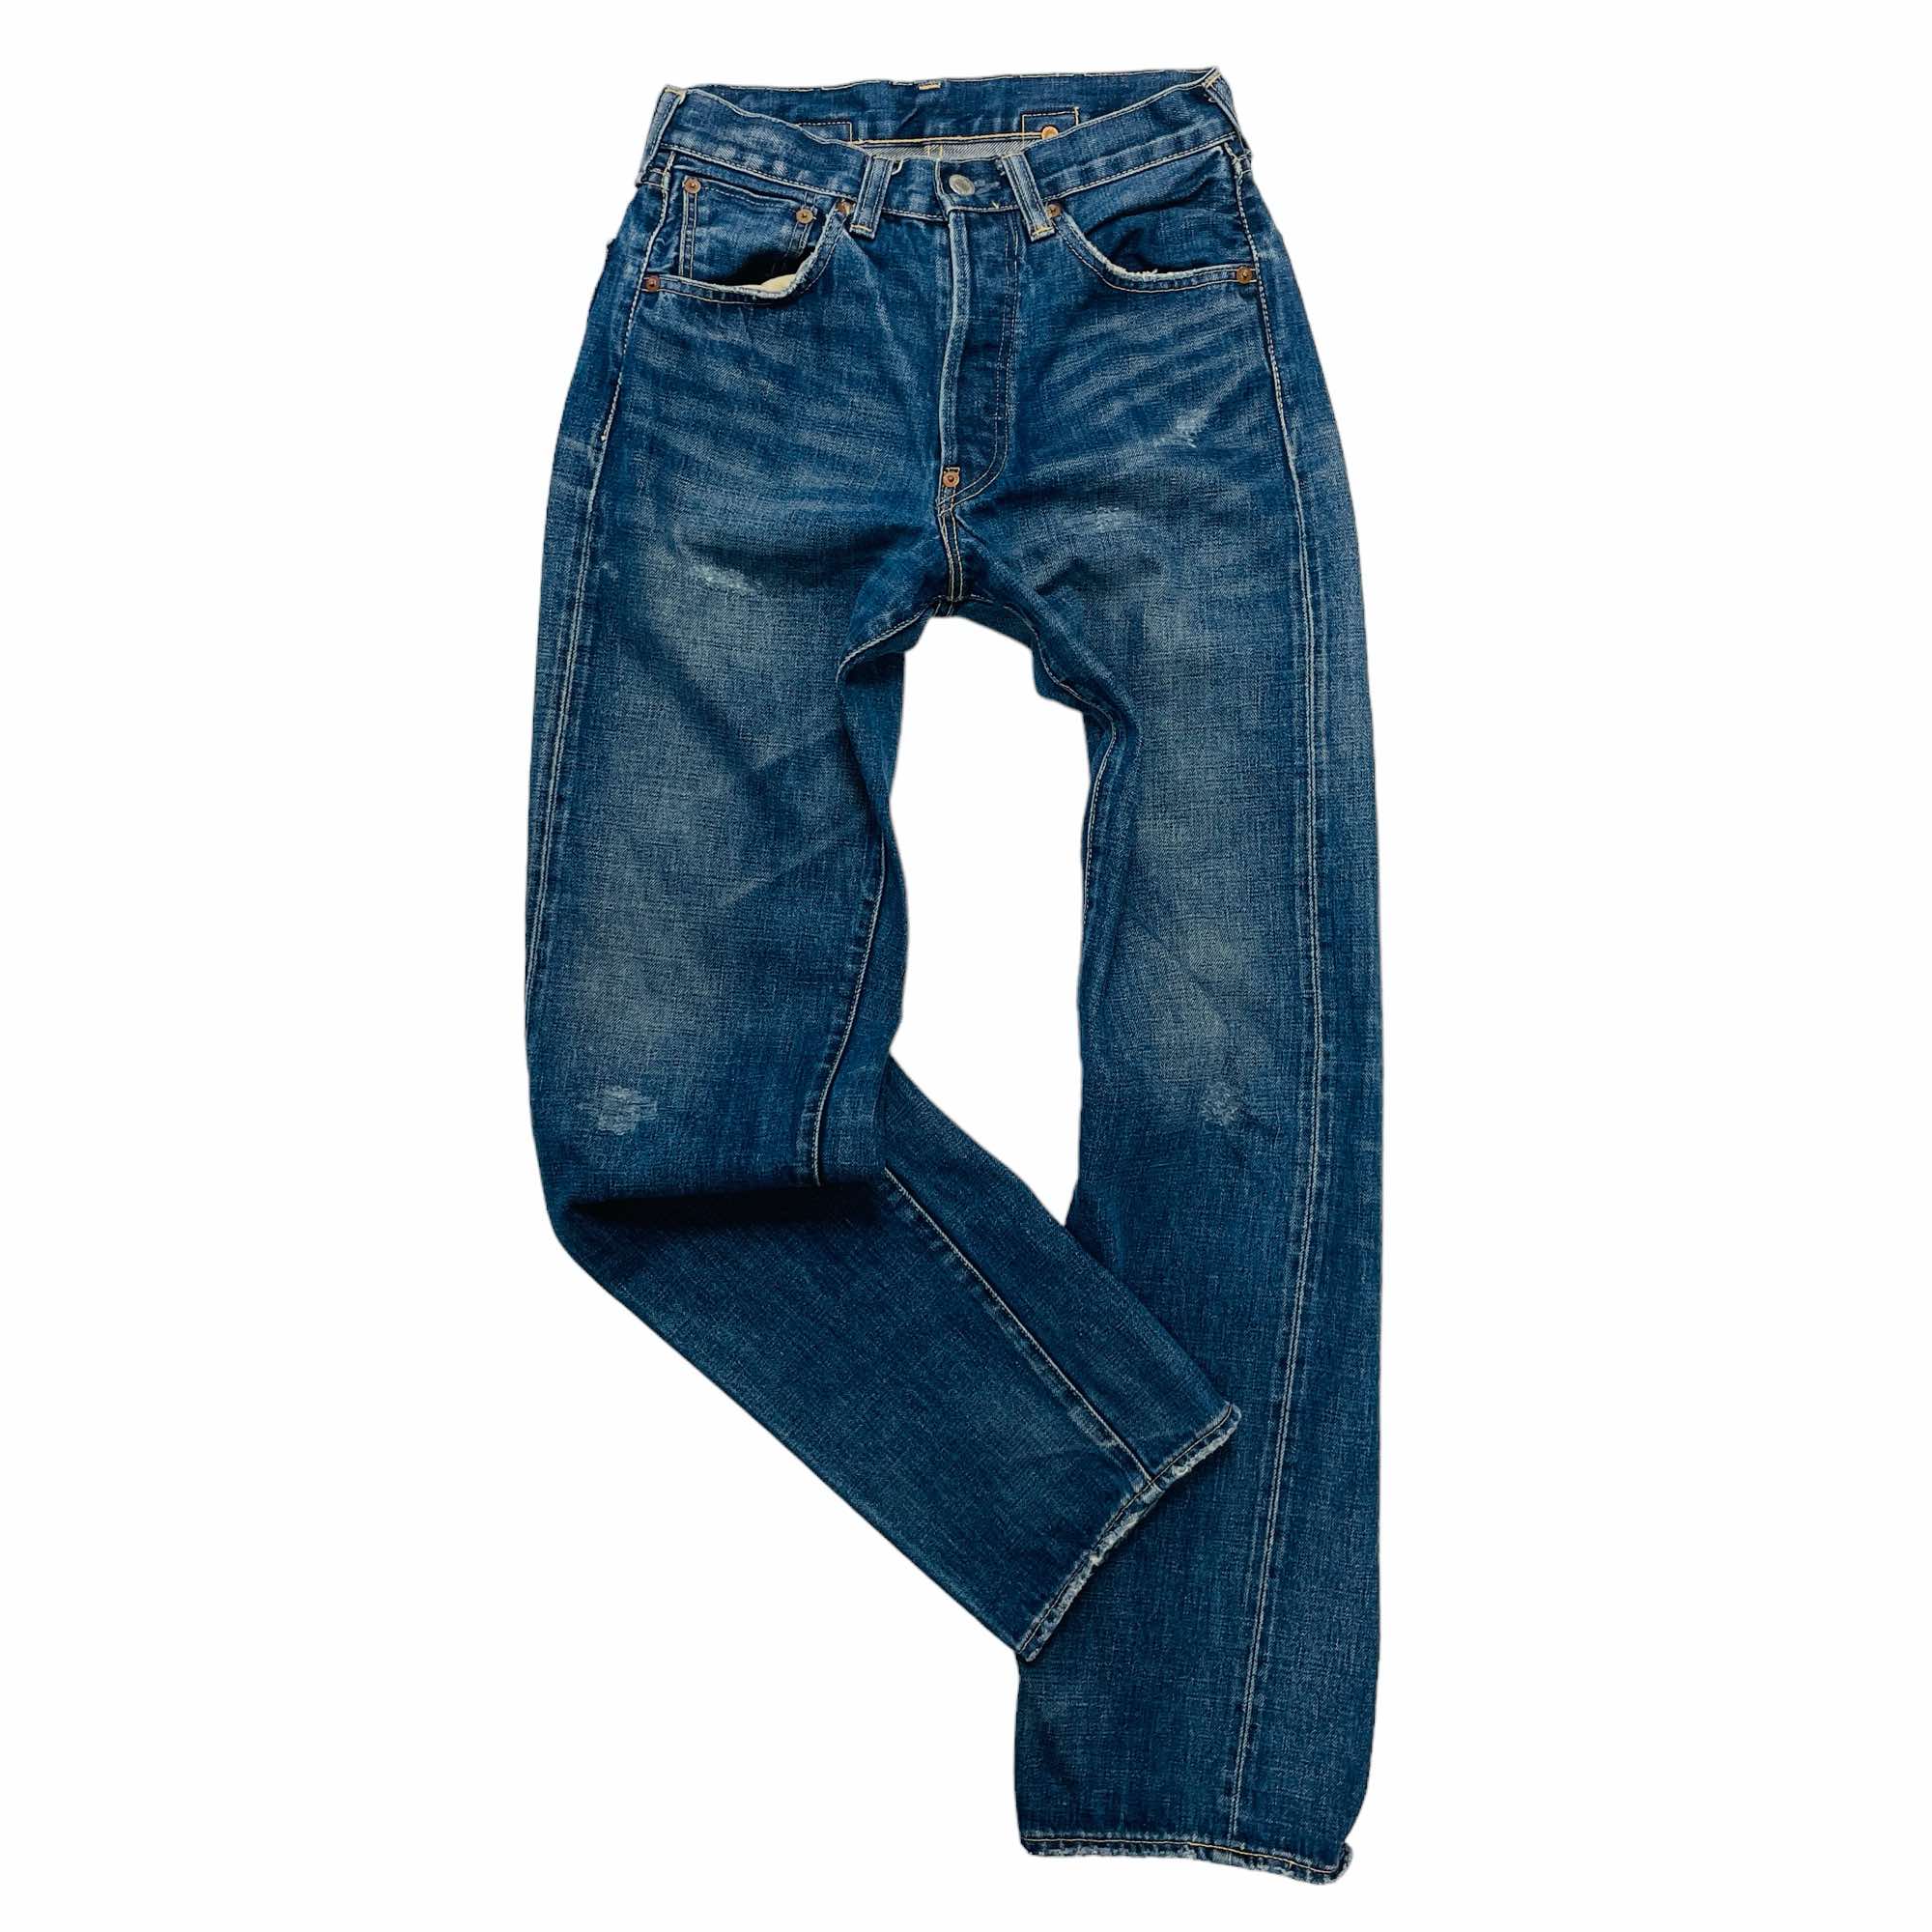 Levi's Denim Jeans - W28 L36